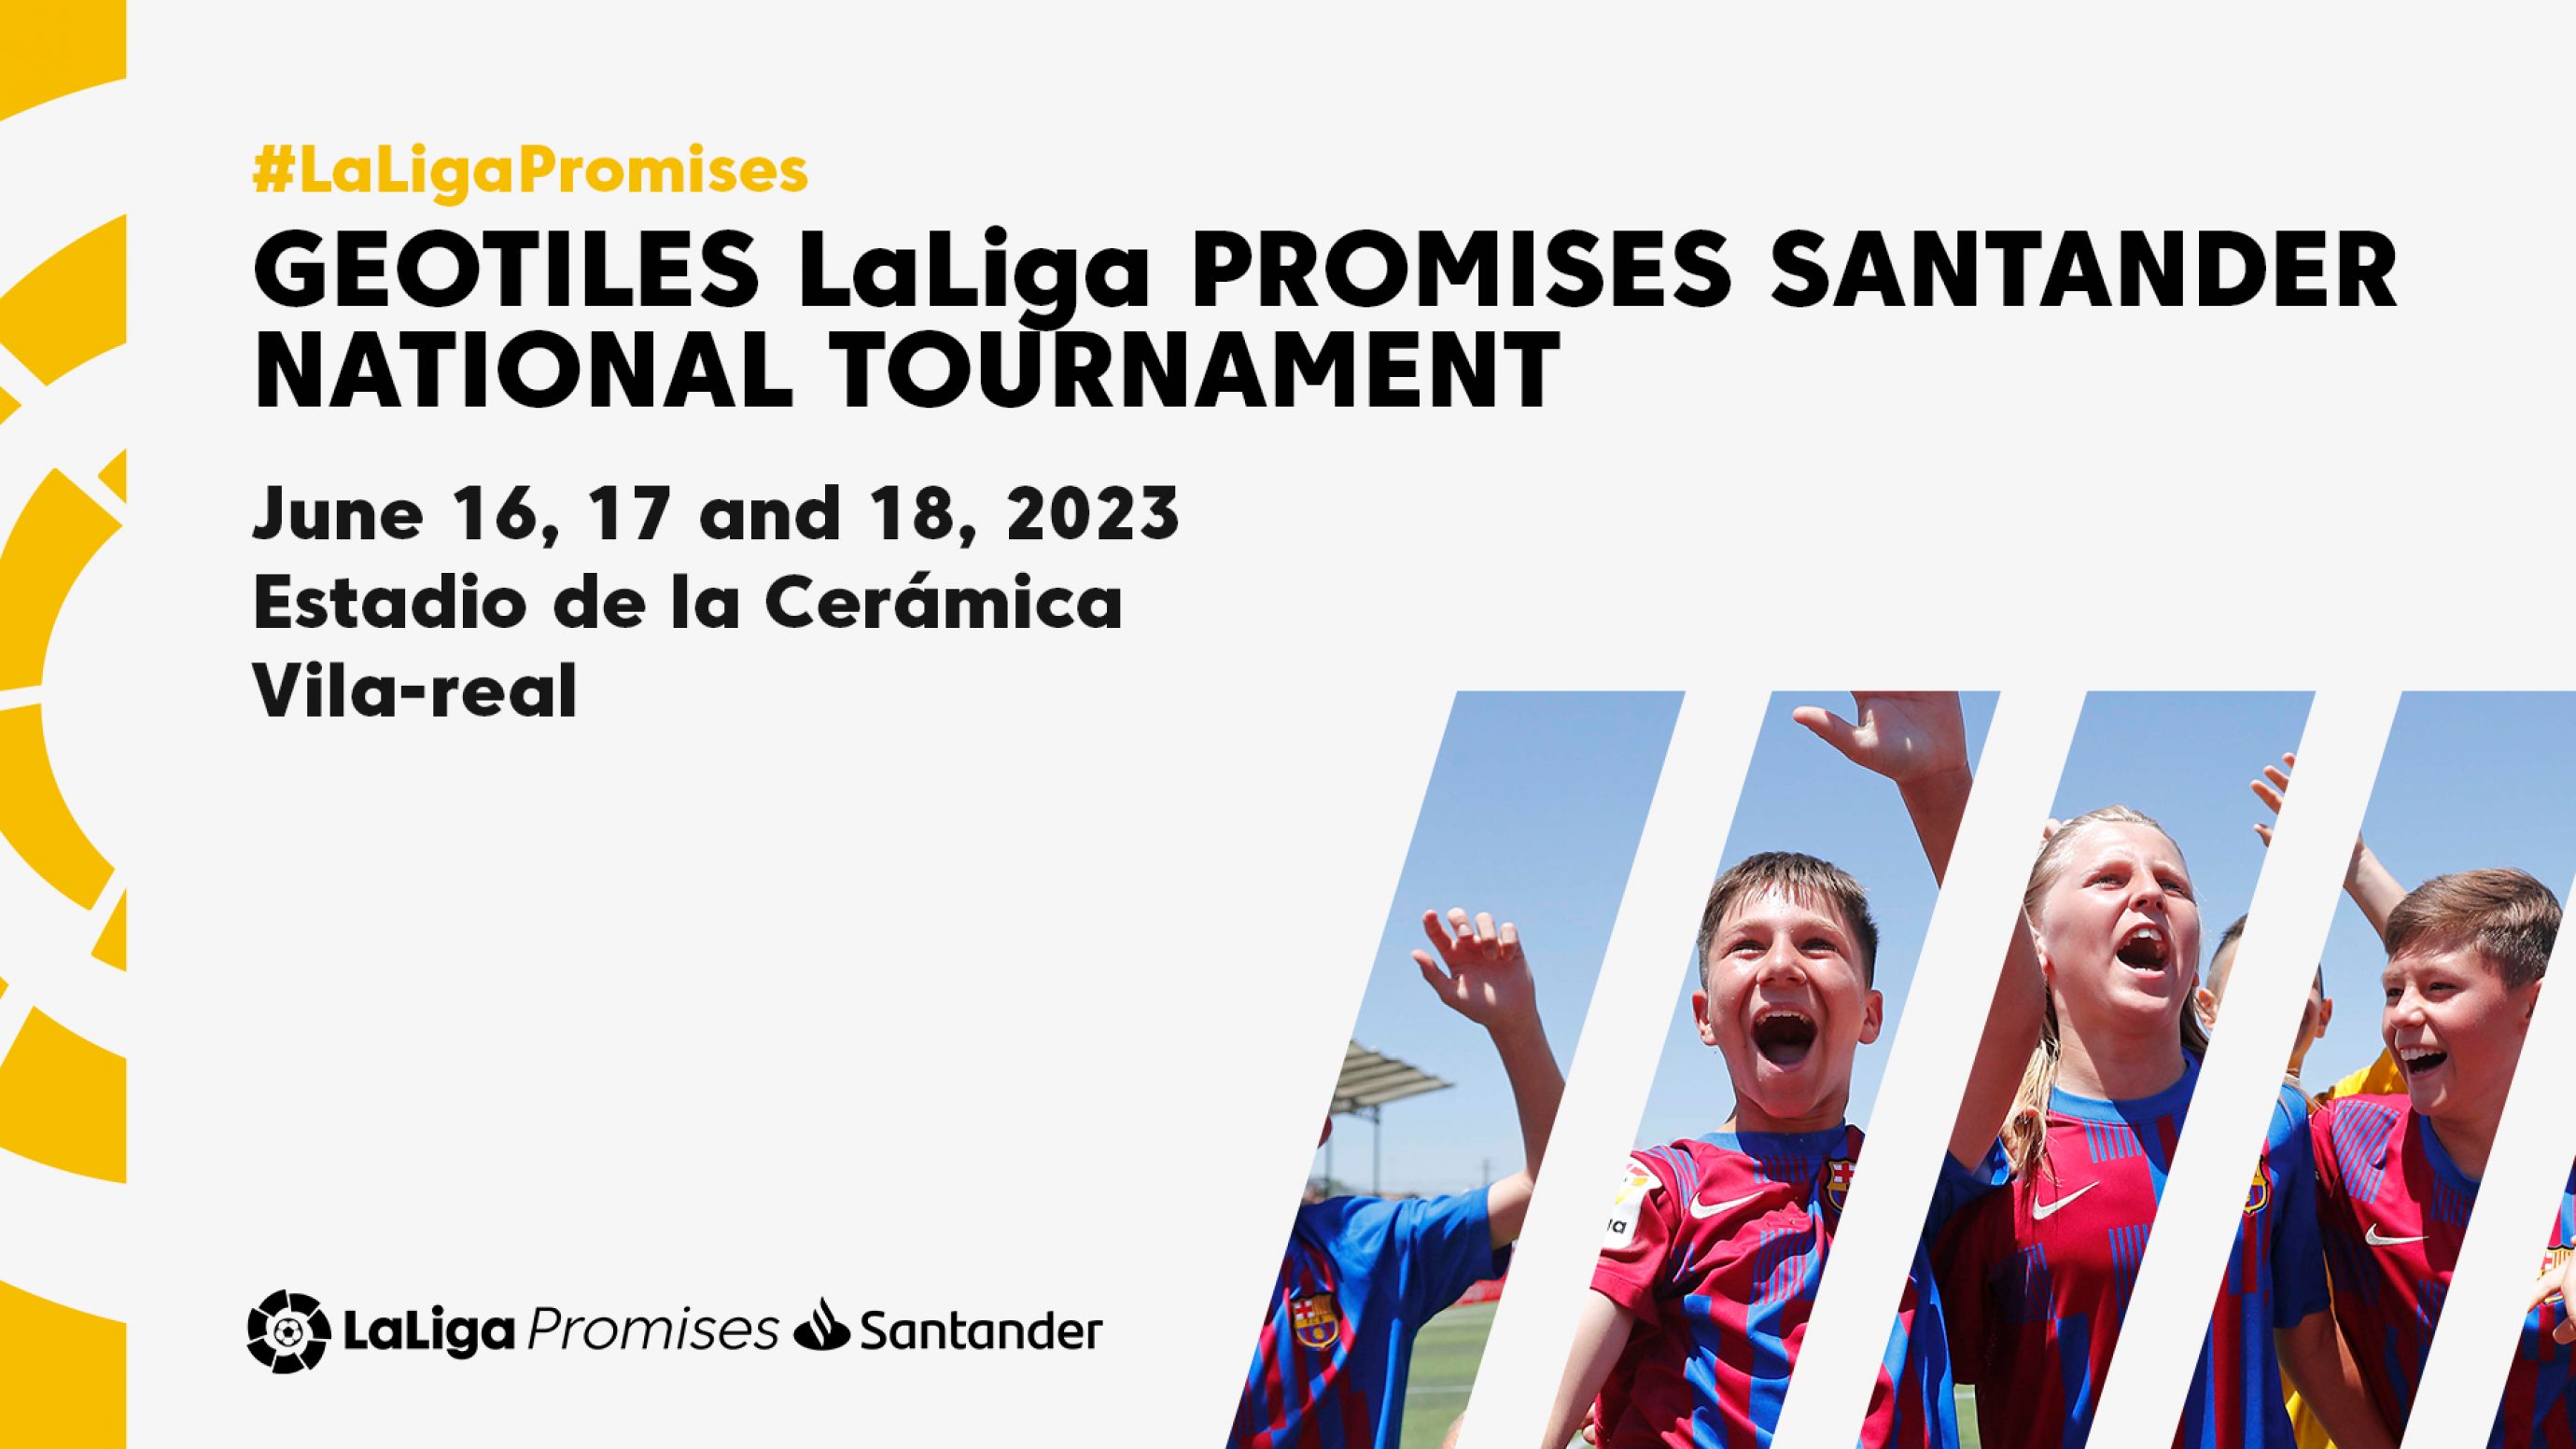 Liga promises santander 2023